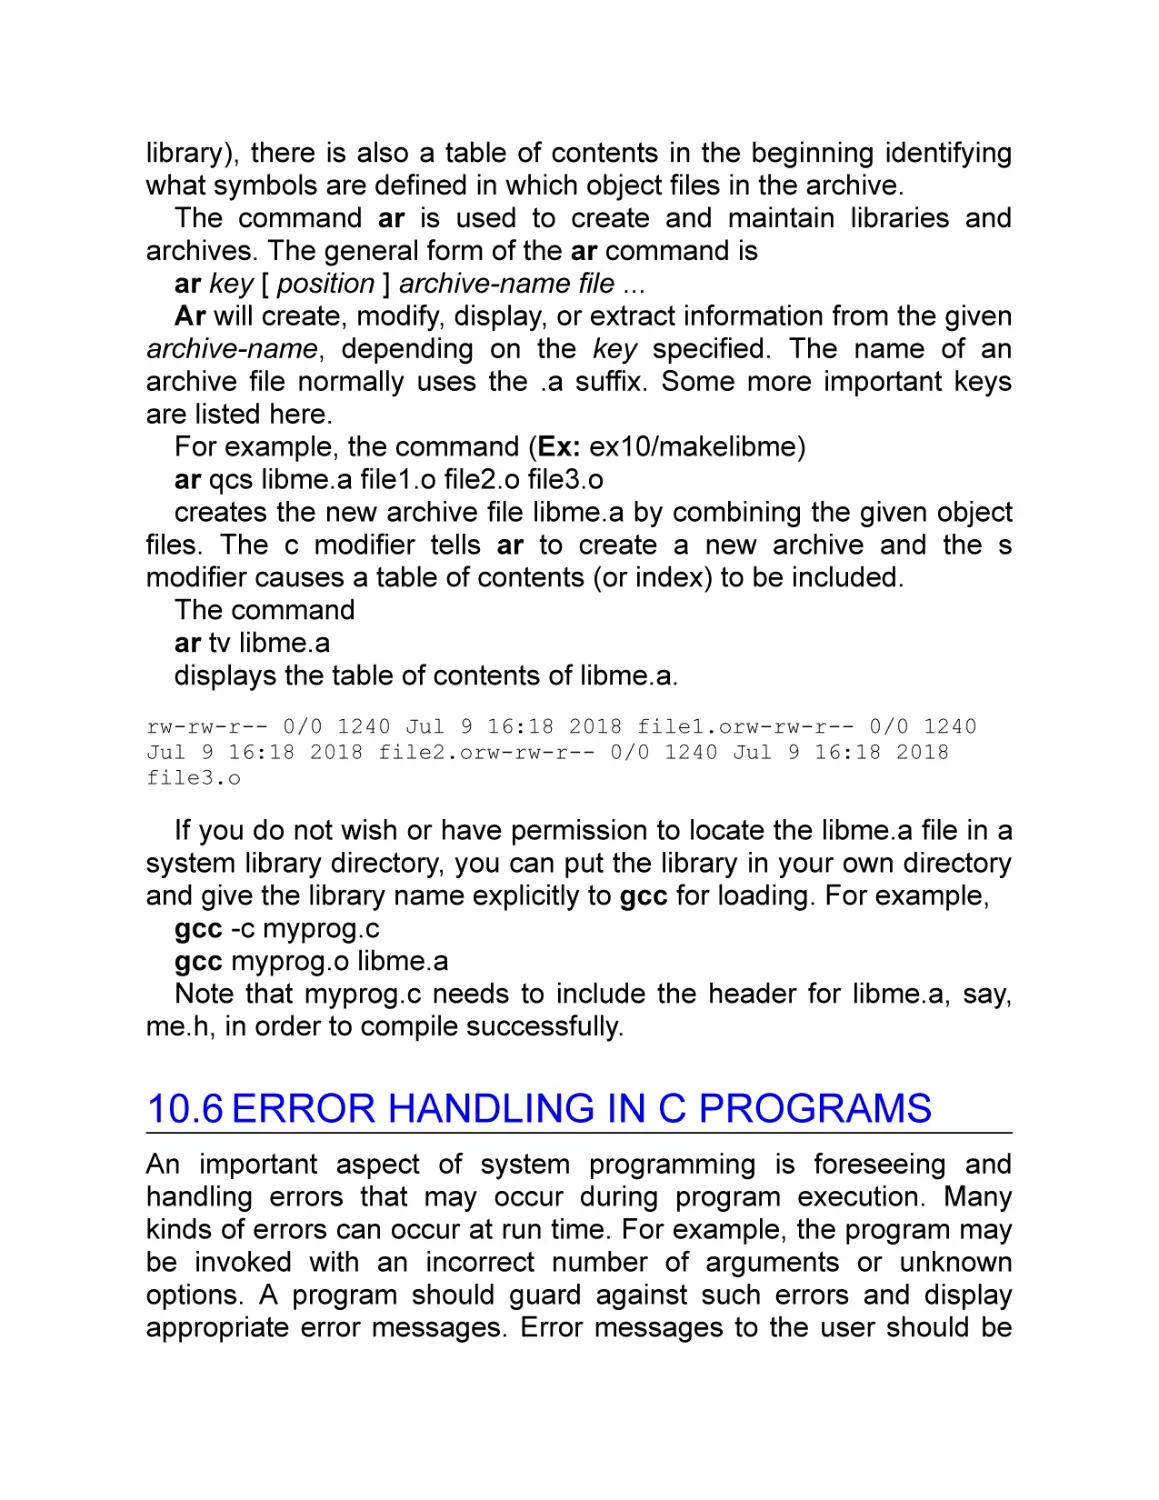 10.6 Error Handling in C Programs